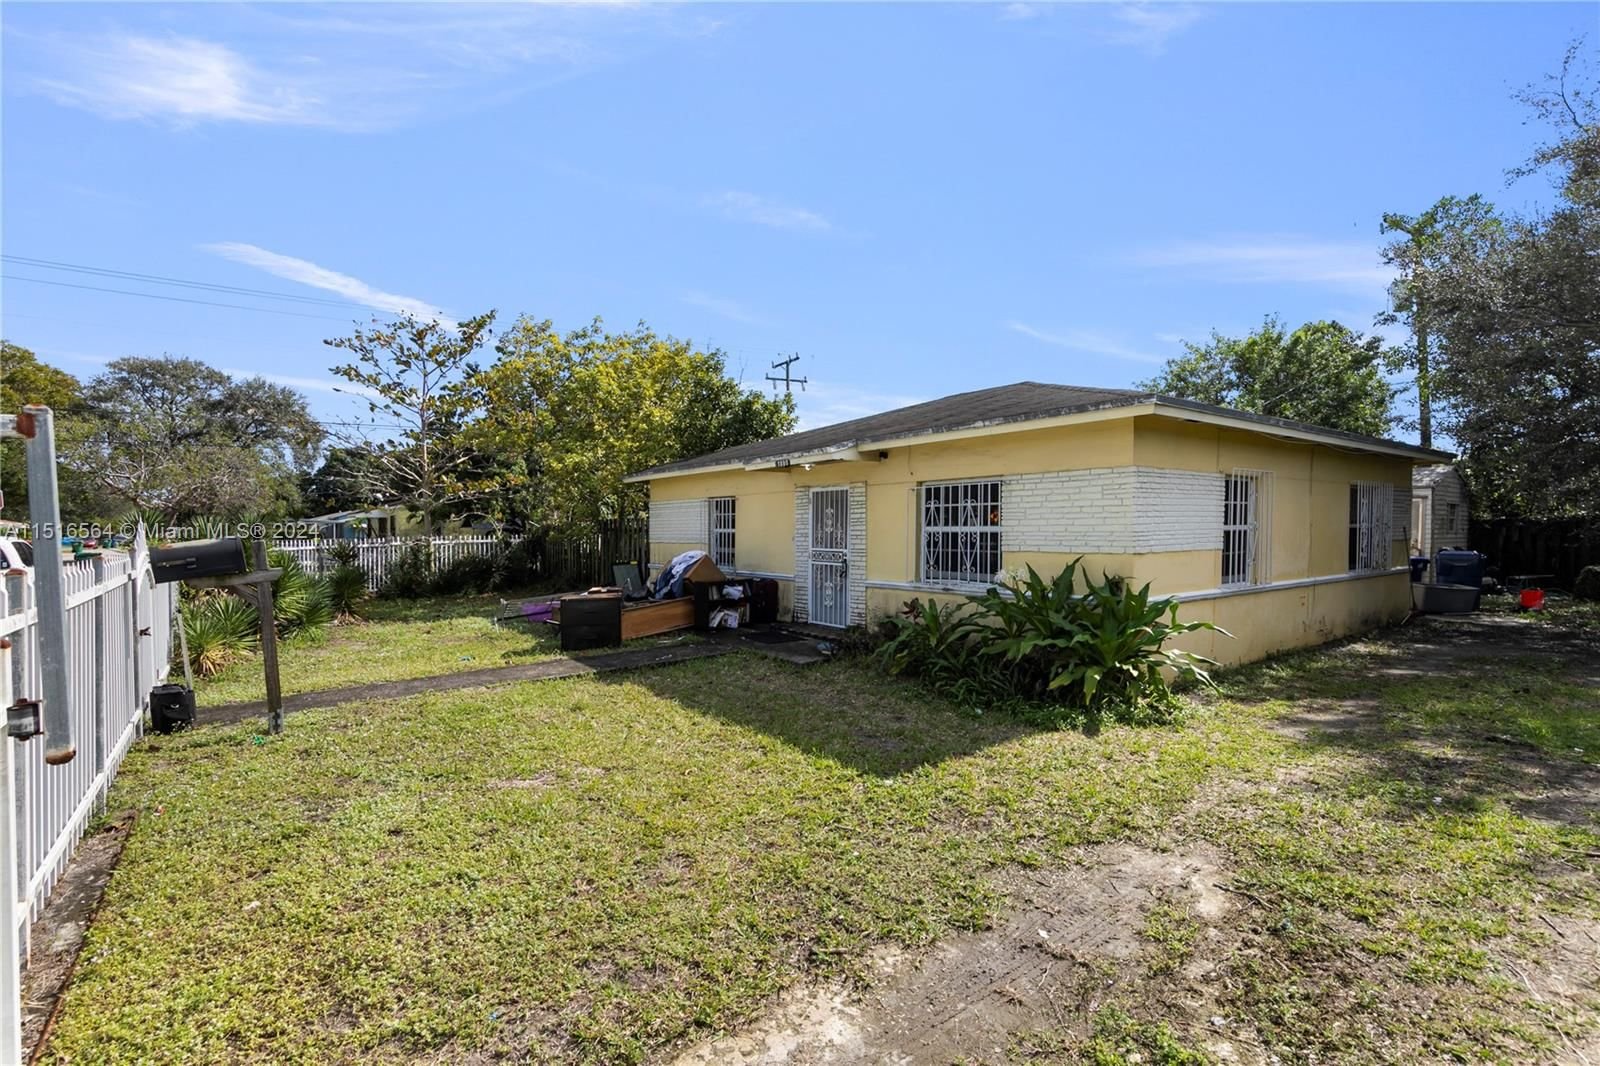 Real estate property located at 1800 86th Ter, Miami-Dade County, SERINO SUB, Miami, FL